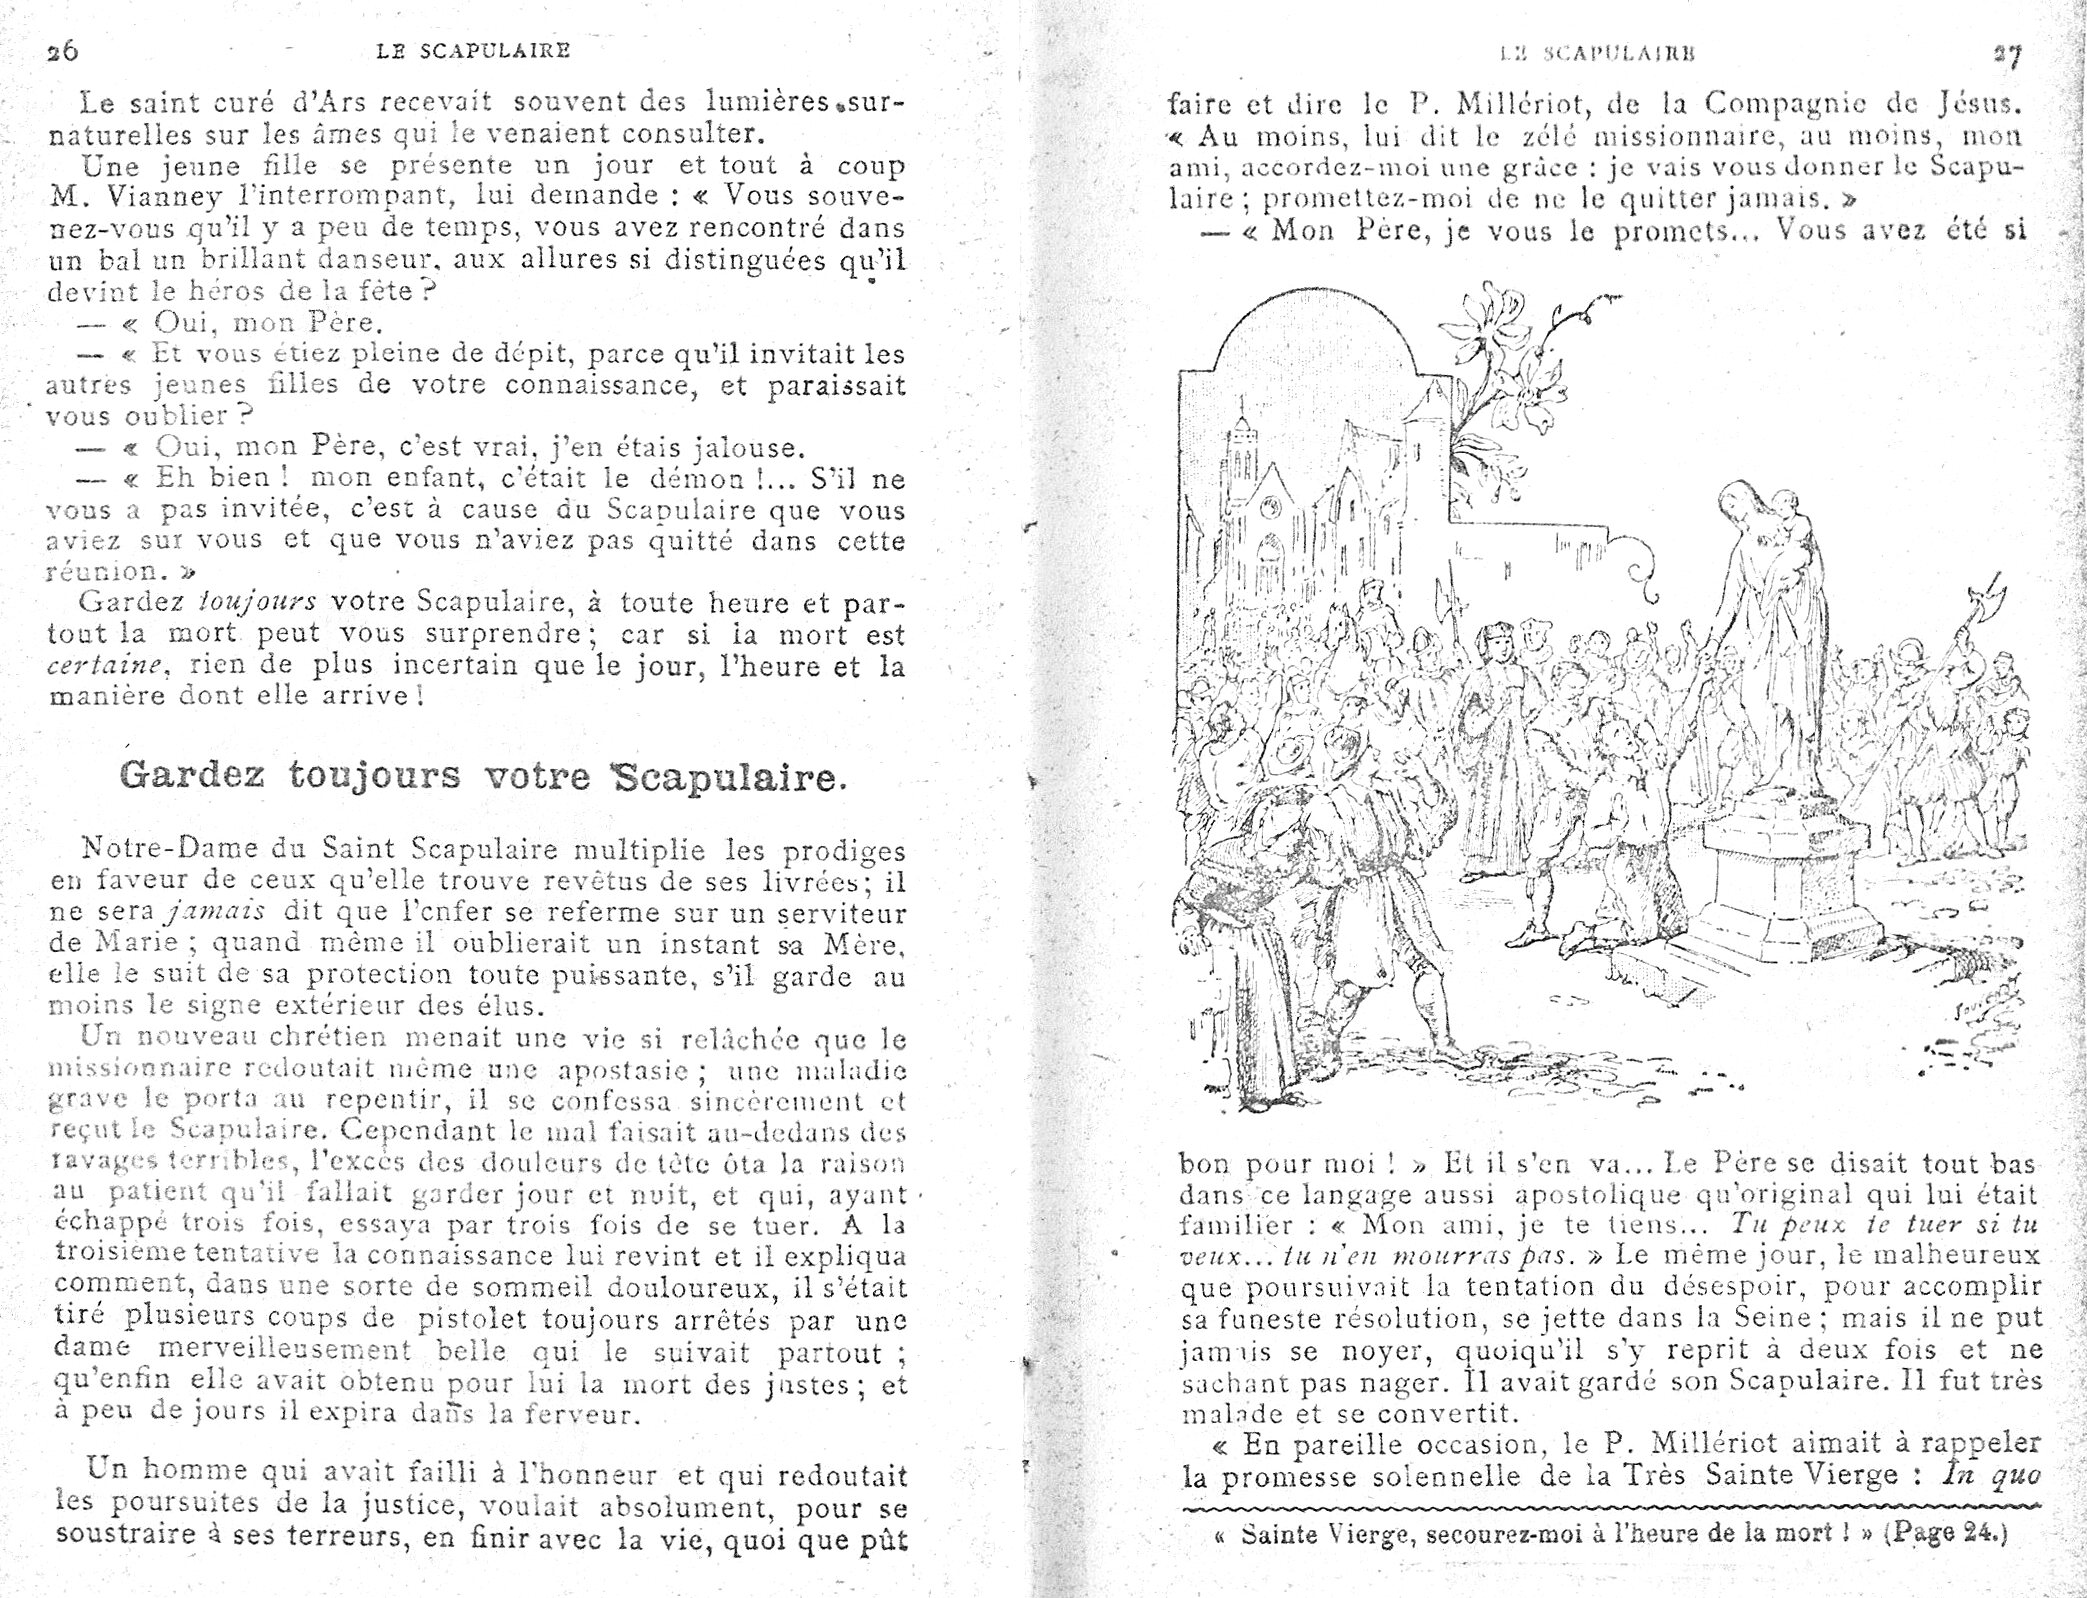 Histoires sur le Scapulaire de Notre-Dame du Mont-Carmel - Page 4 Le_sca24